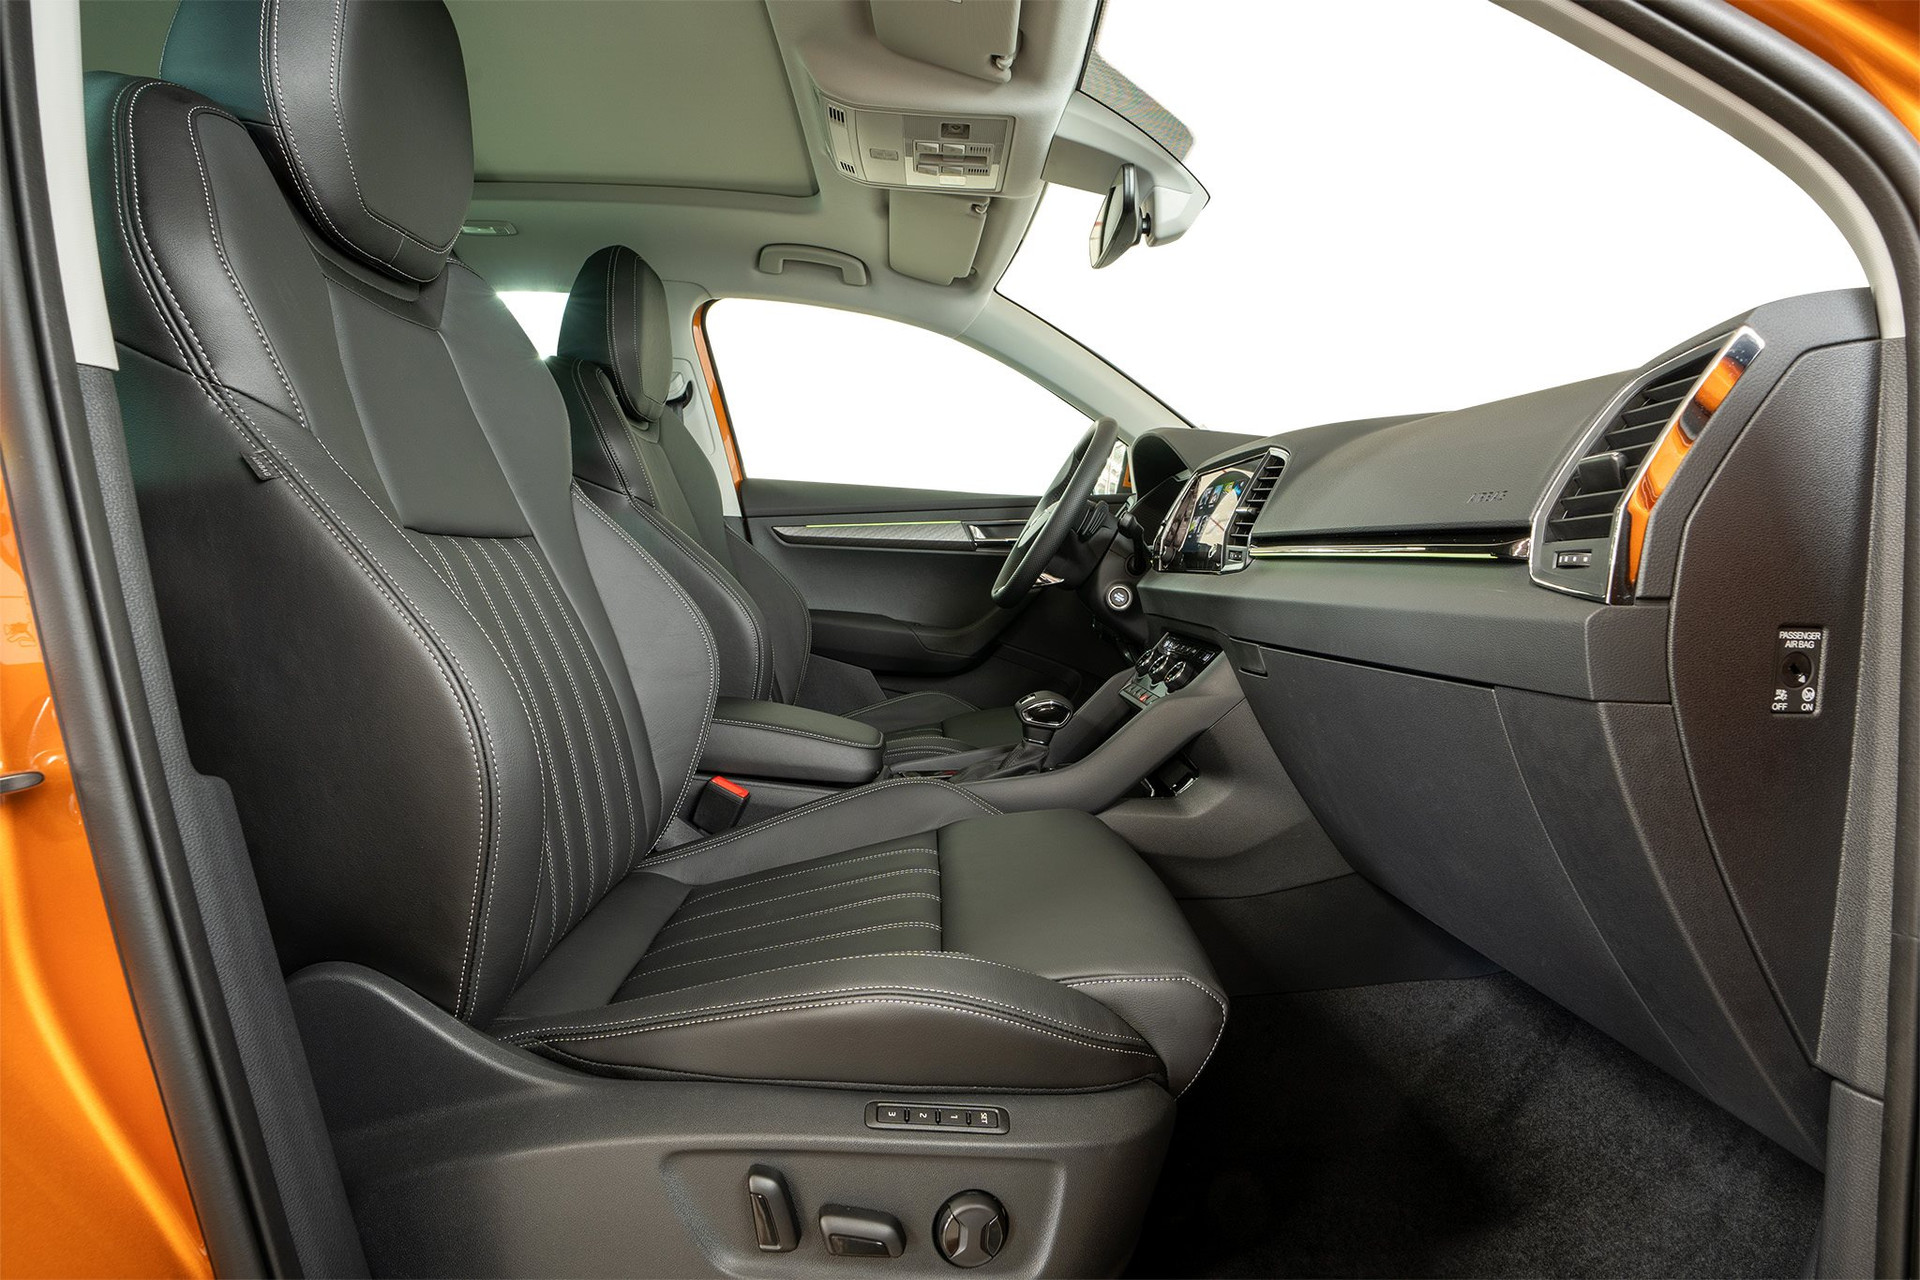 Skoda Karoq - SUV cỡ C dùng chung khung gầm với Volkswagen, chốt giá từ 999 triệu đồng cạnh tranh với Mazda CX-5 - Ảnh 6.